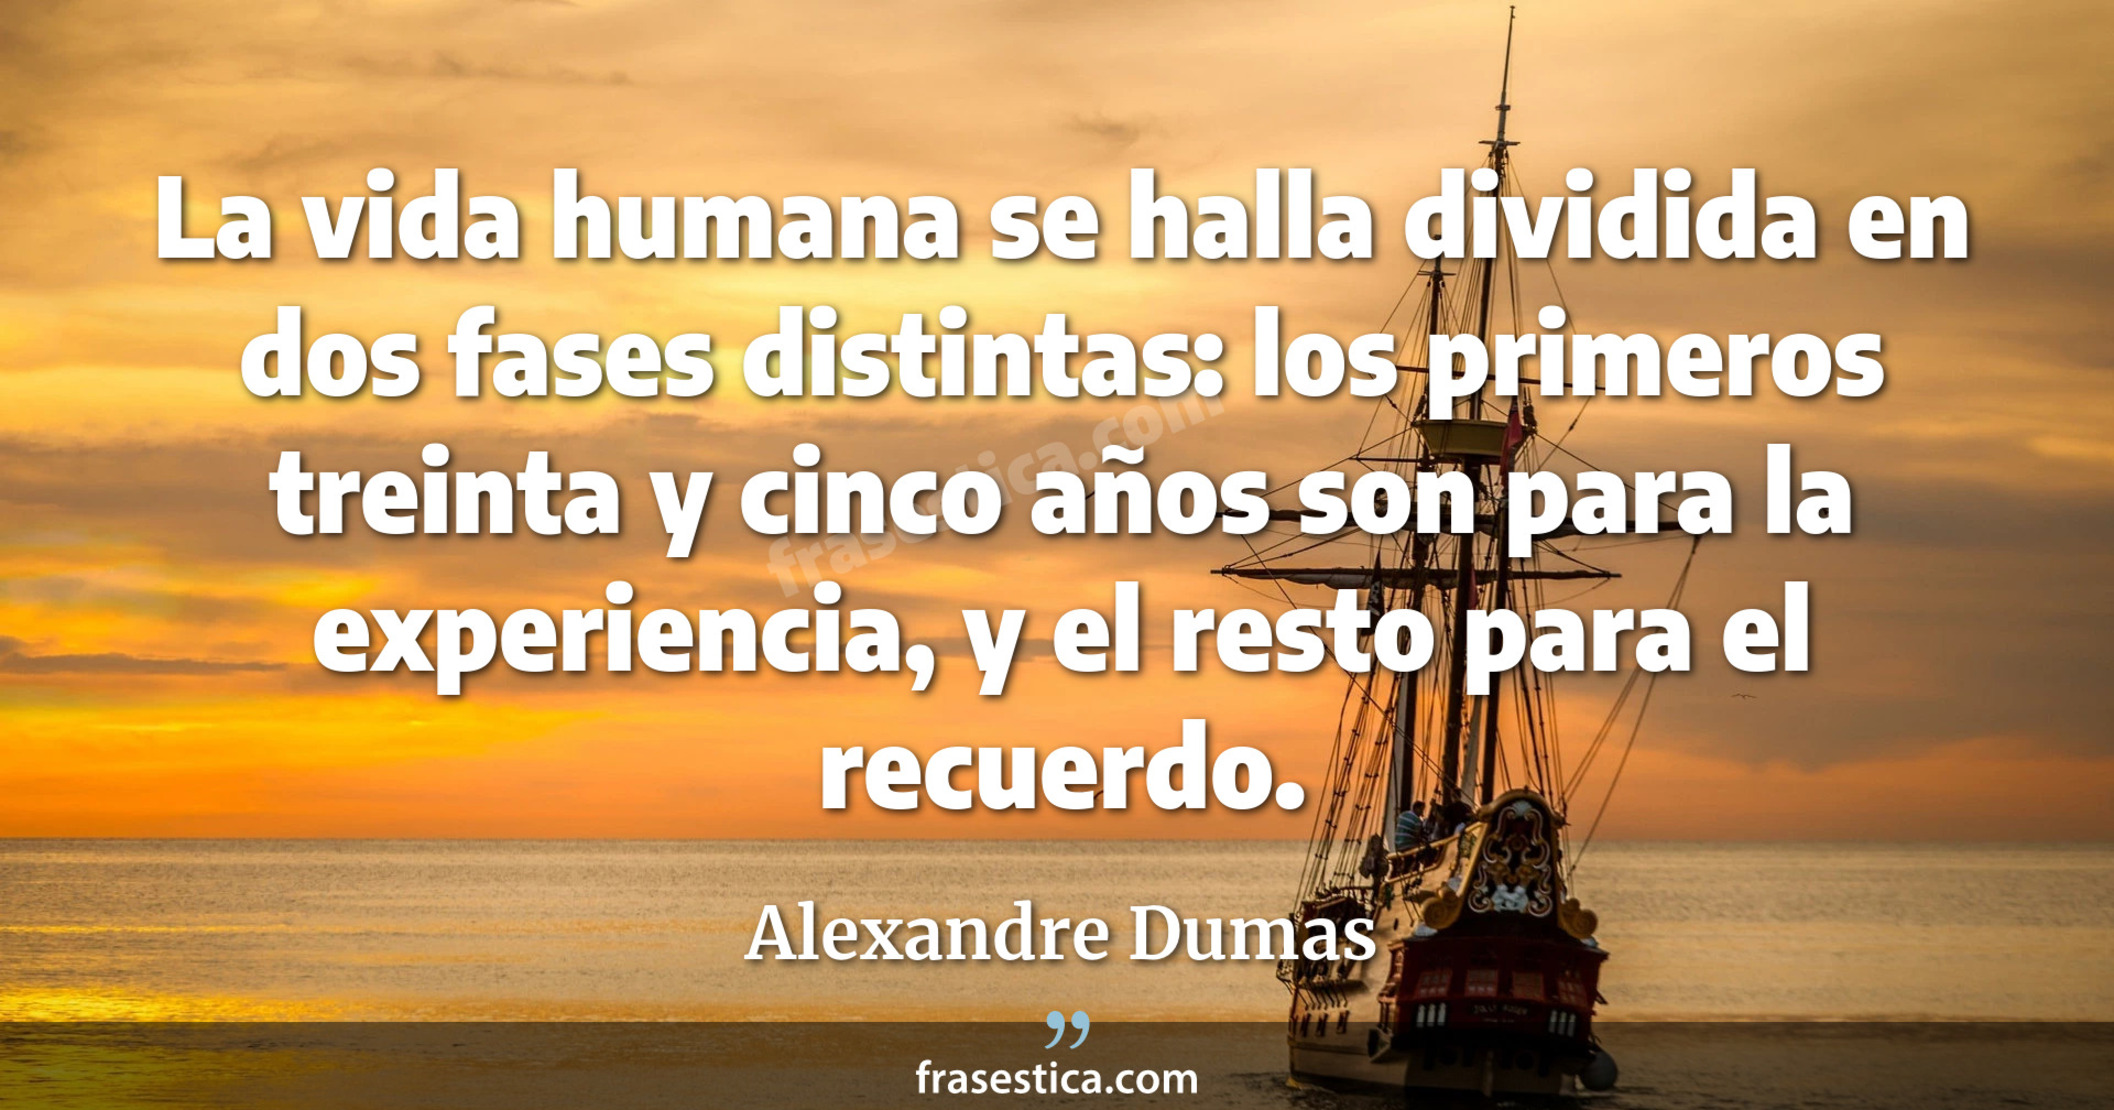 La vida humana se halla dividida en dos fases distintas: los primeros treinta y cinco años son para la experiencia, y el resto para el recuerdo. - Alexandre Dumas